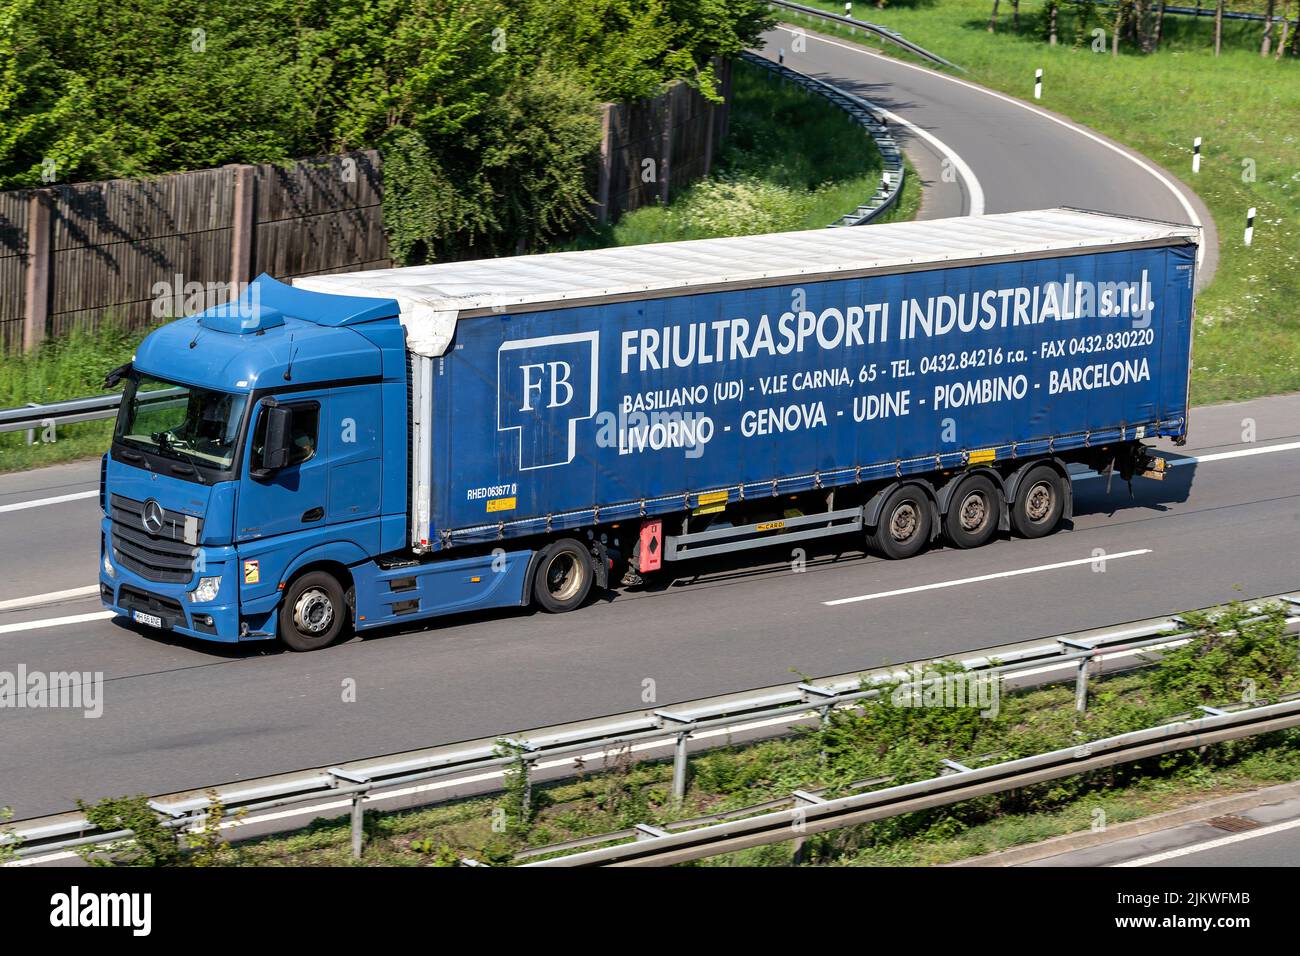 Mercedes-Benz Actros camión con Friultrasonporti Industriali remolque curtainside en autopista Foto de stock